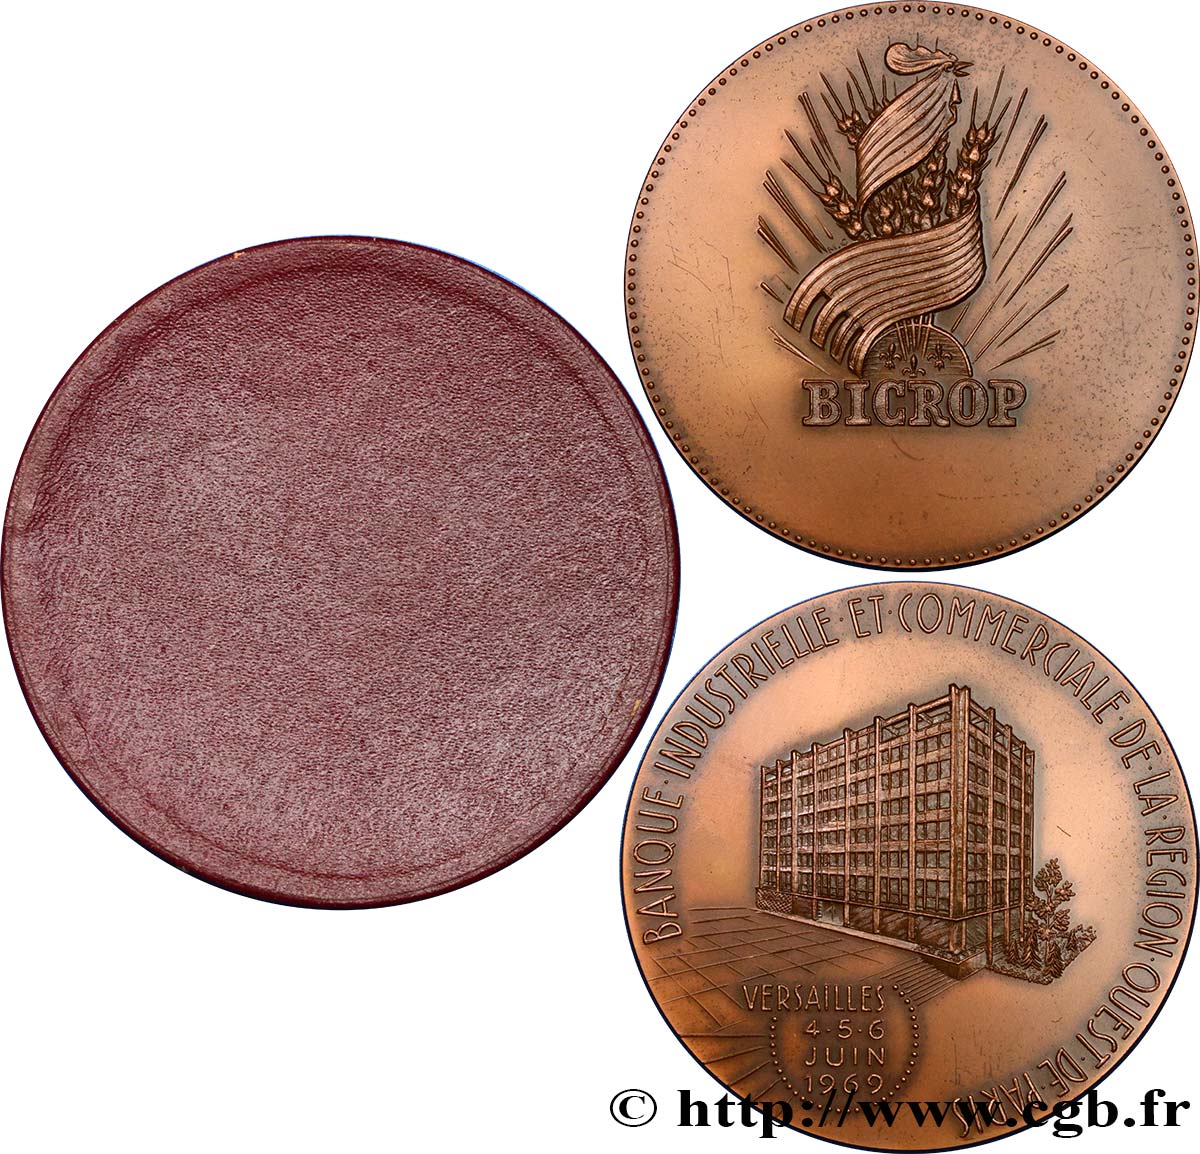 BANQUES - ÉTABLISSEMENTS DE CRÉDIT Médaille, Banque BICROP AU